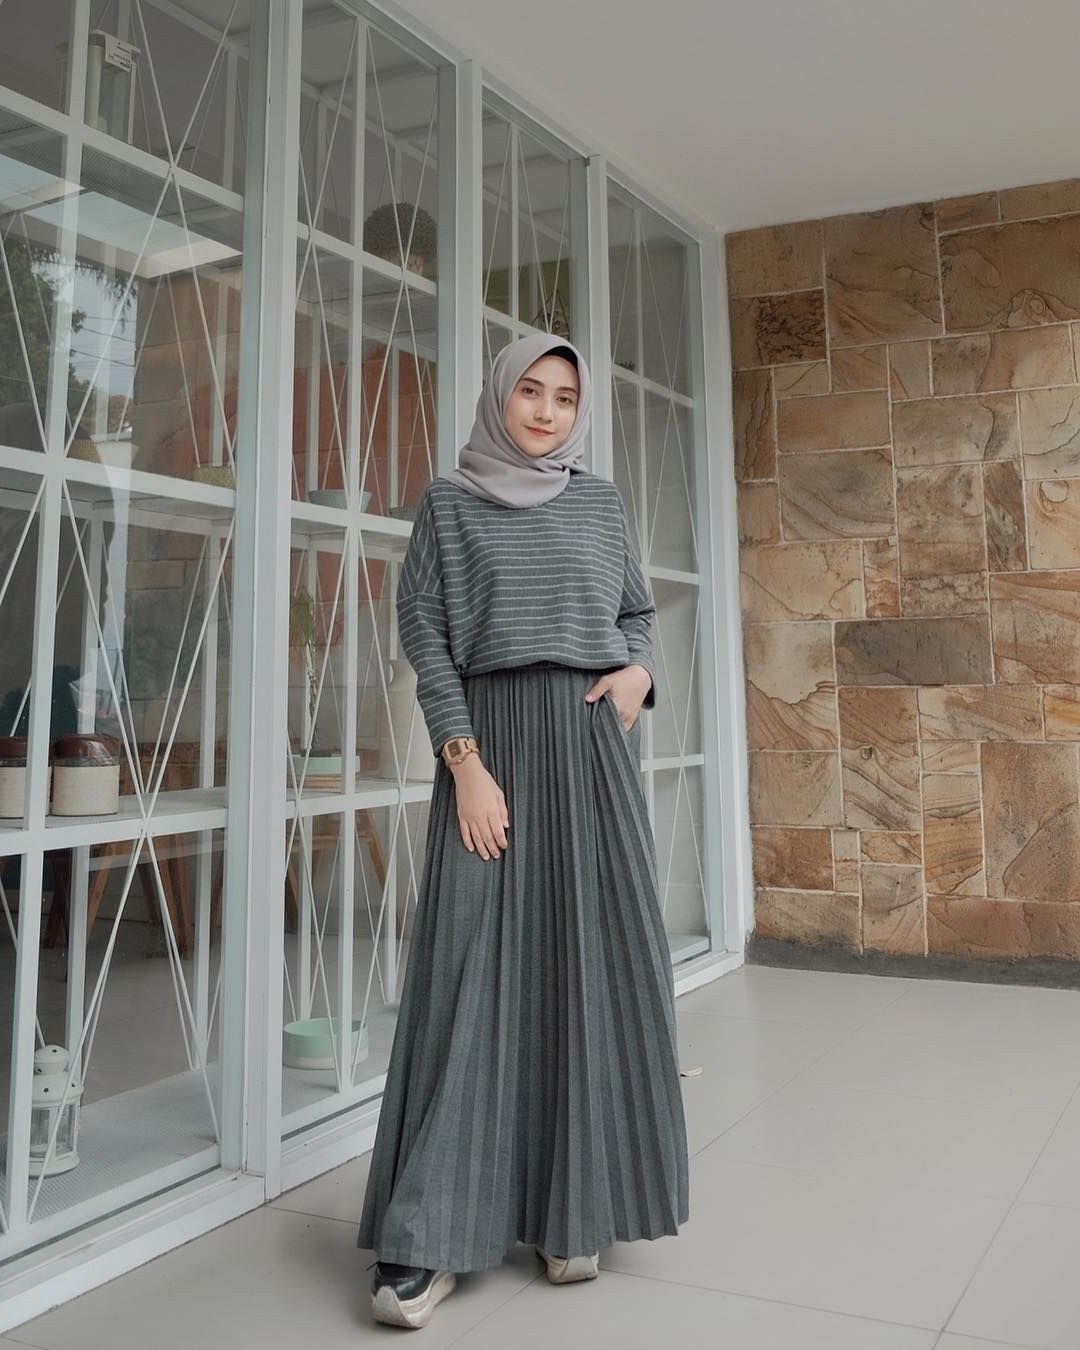 Model Referensi Baju Lebaran 2019 Fmdf Baju Muslim Lebaran Terbaru 2019 Dengan Gambar